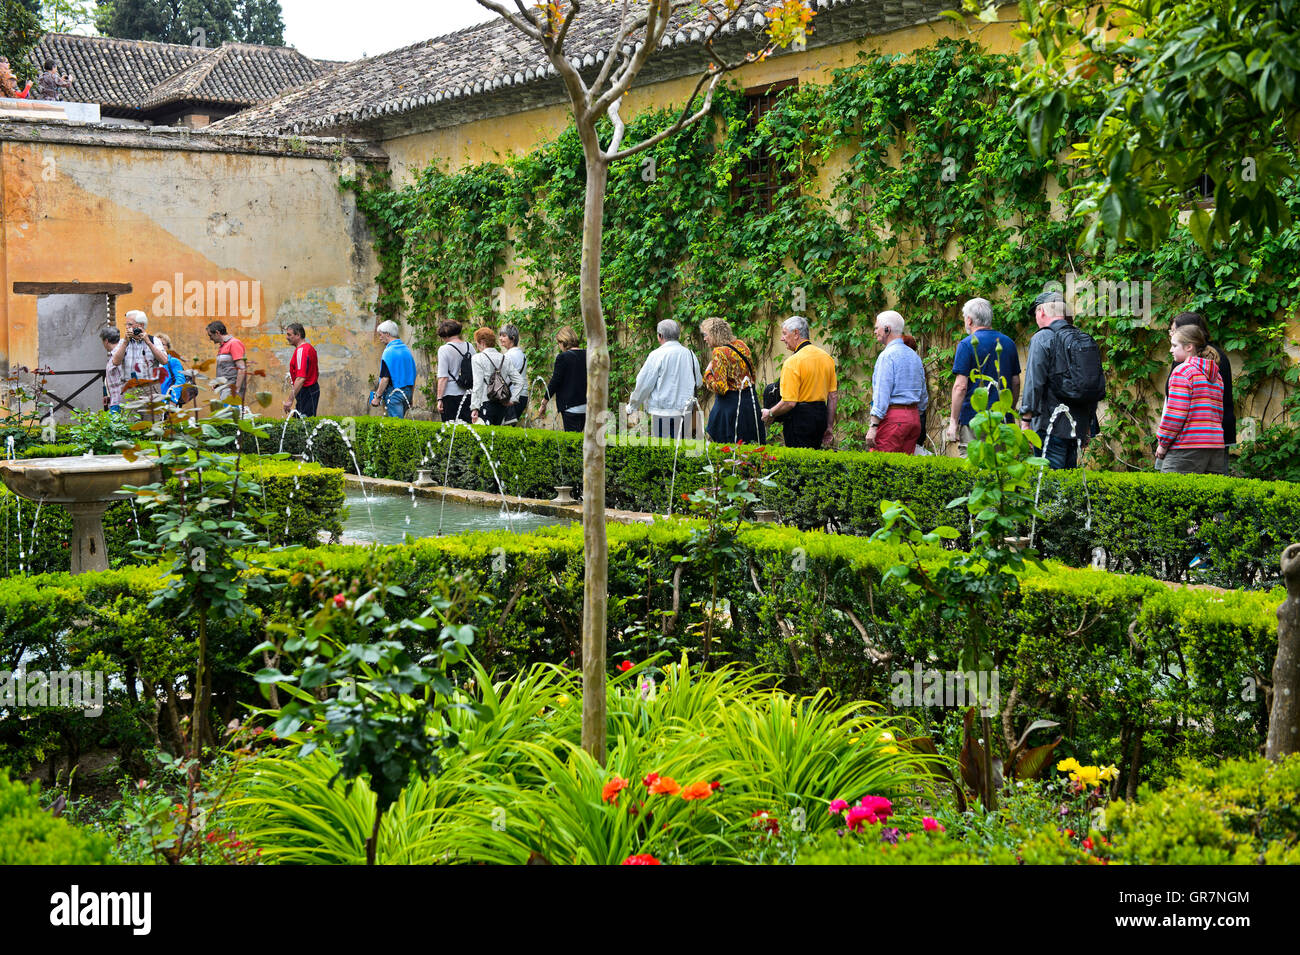 Los visitantes pasear por los jardines de la Alhambra, declarado Patrimonio de la Humanidad por la Unesco, Granada, España Foto de stock